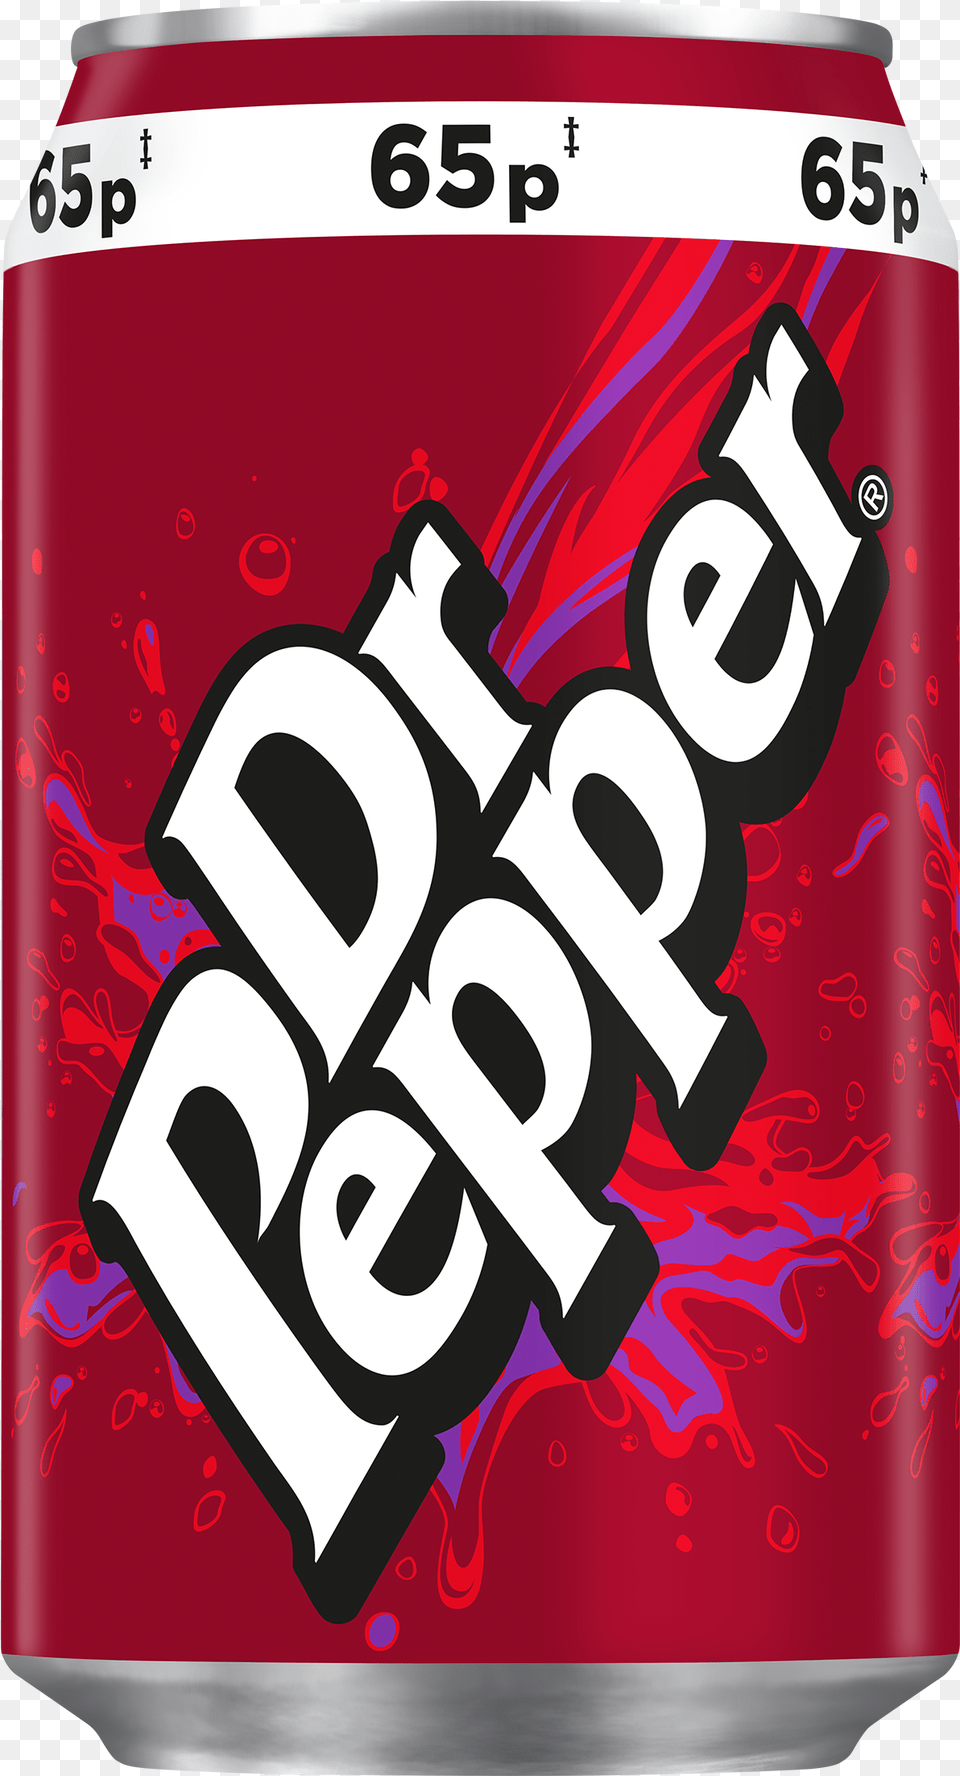 Dr Pepper, Beverage, Coke, Soda, Dynamite Png Image